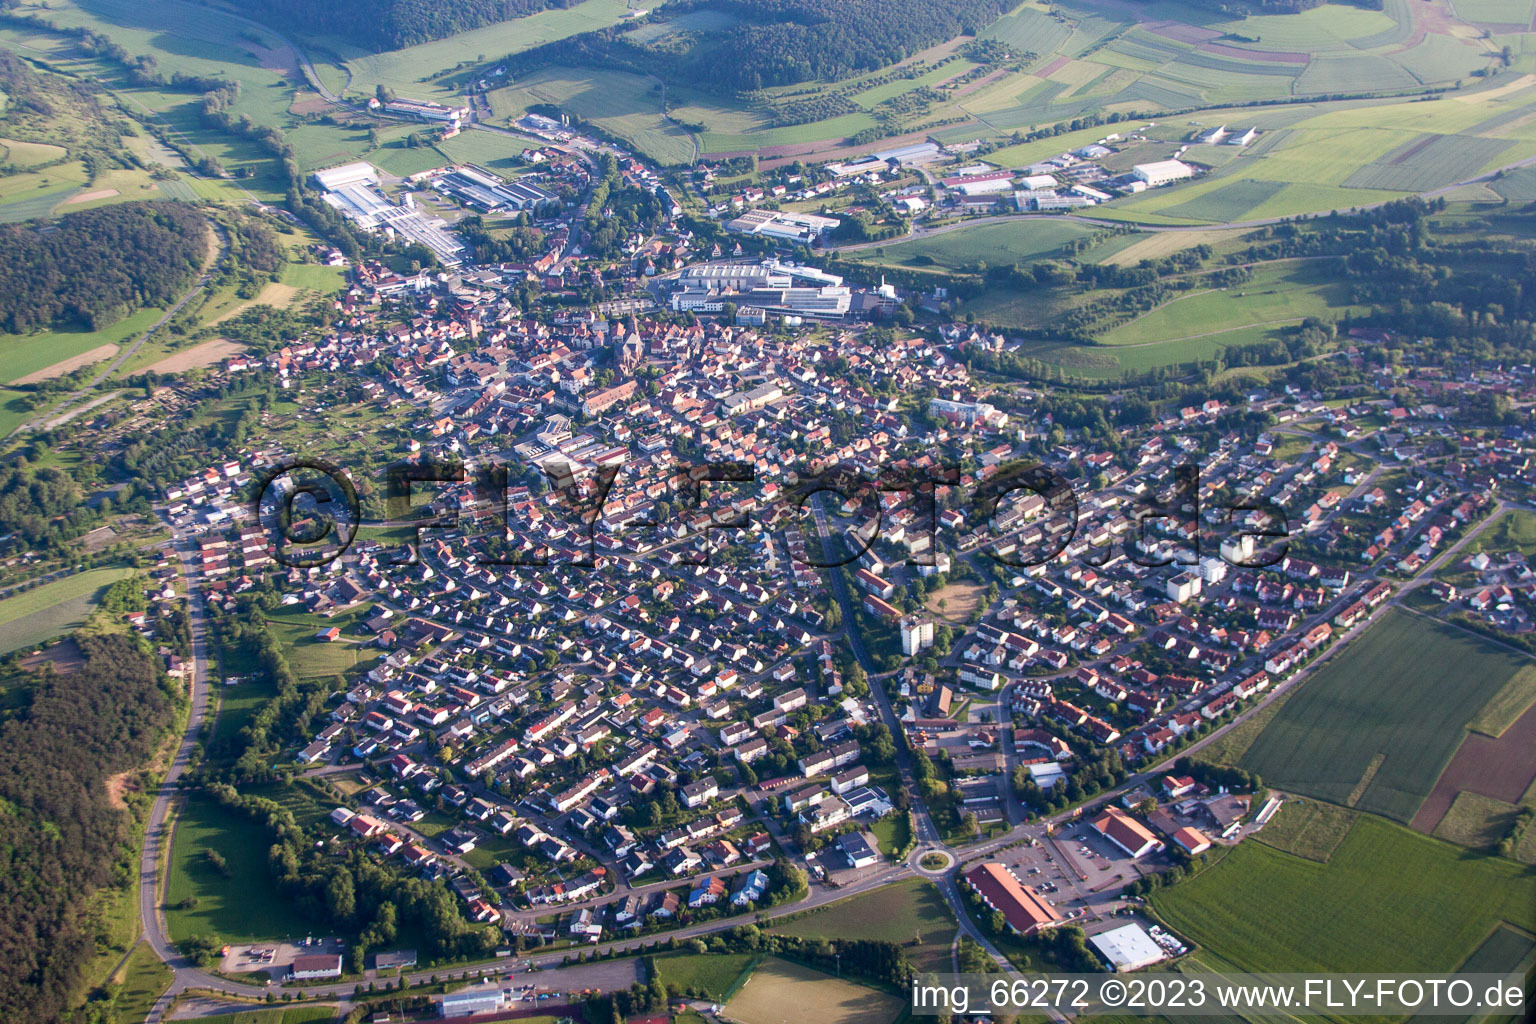 Hardheim dans le département Bade-Wurtemberg, Allemagne vue d'en haut